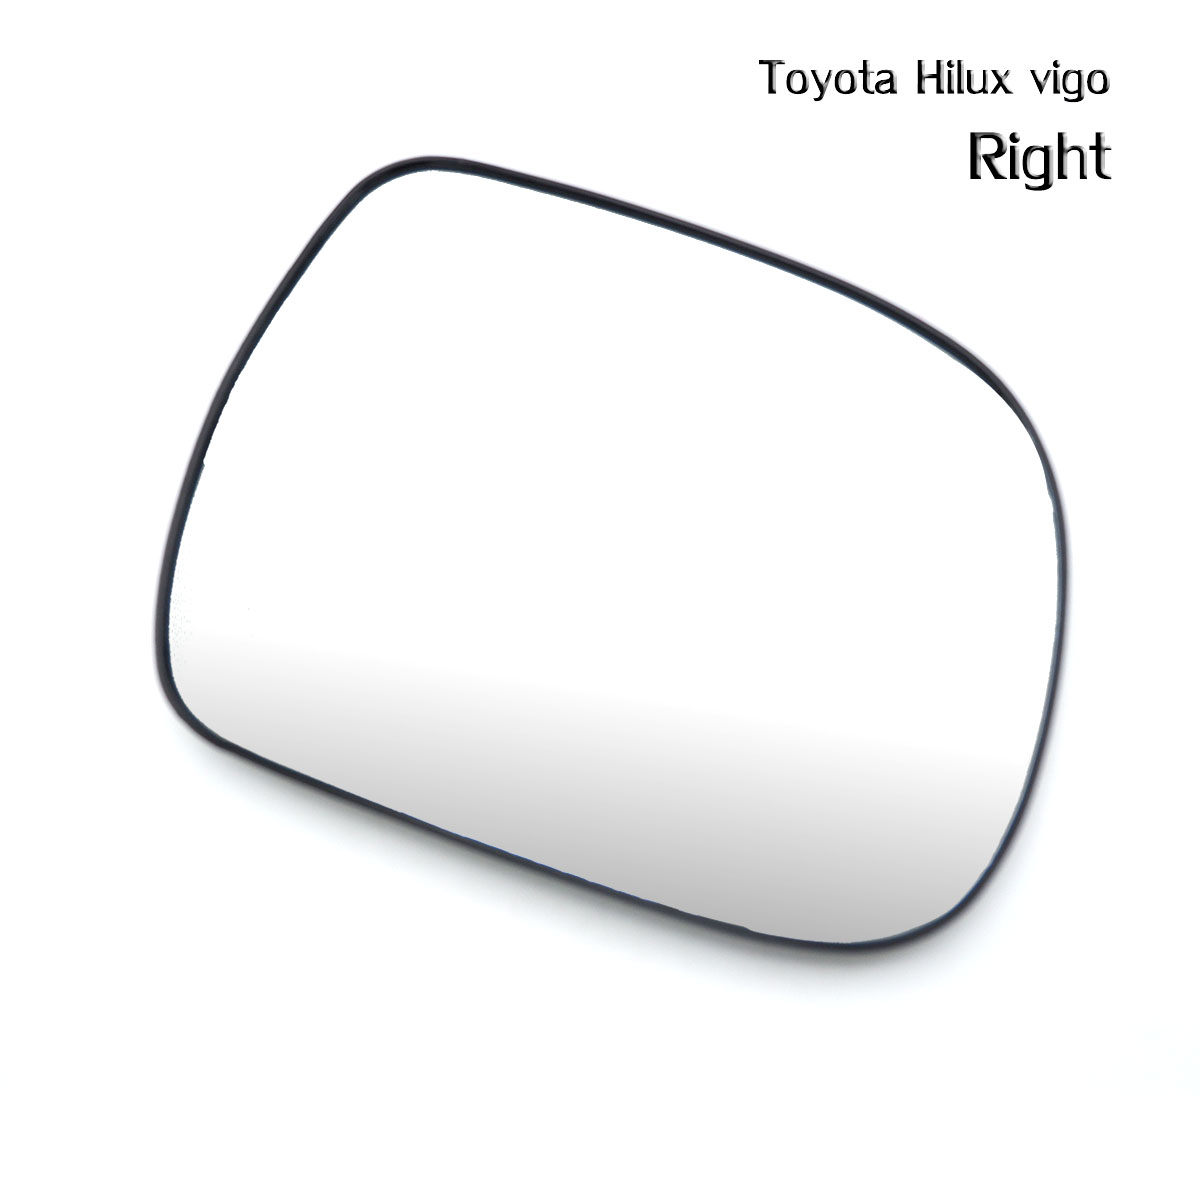 เนื้อเลนส์กระจก ข้าง ขวา Rh ใส่ Toyota Hilux Vigo Right Wing Side Door Mirror Glass Len Hilux Vigo Mk6 Toyota 2005-2014 มีบริการเก็บเงินปลายทาง